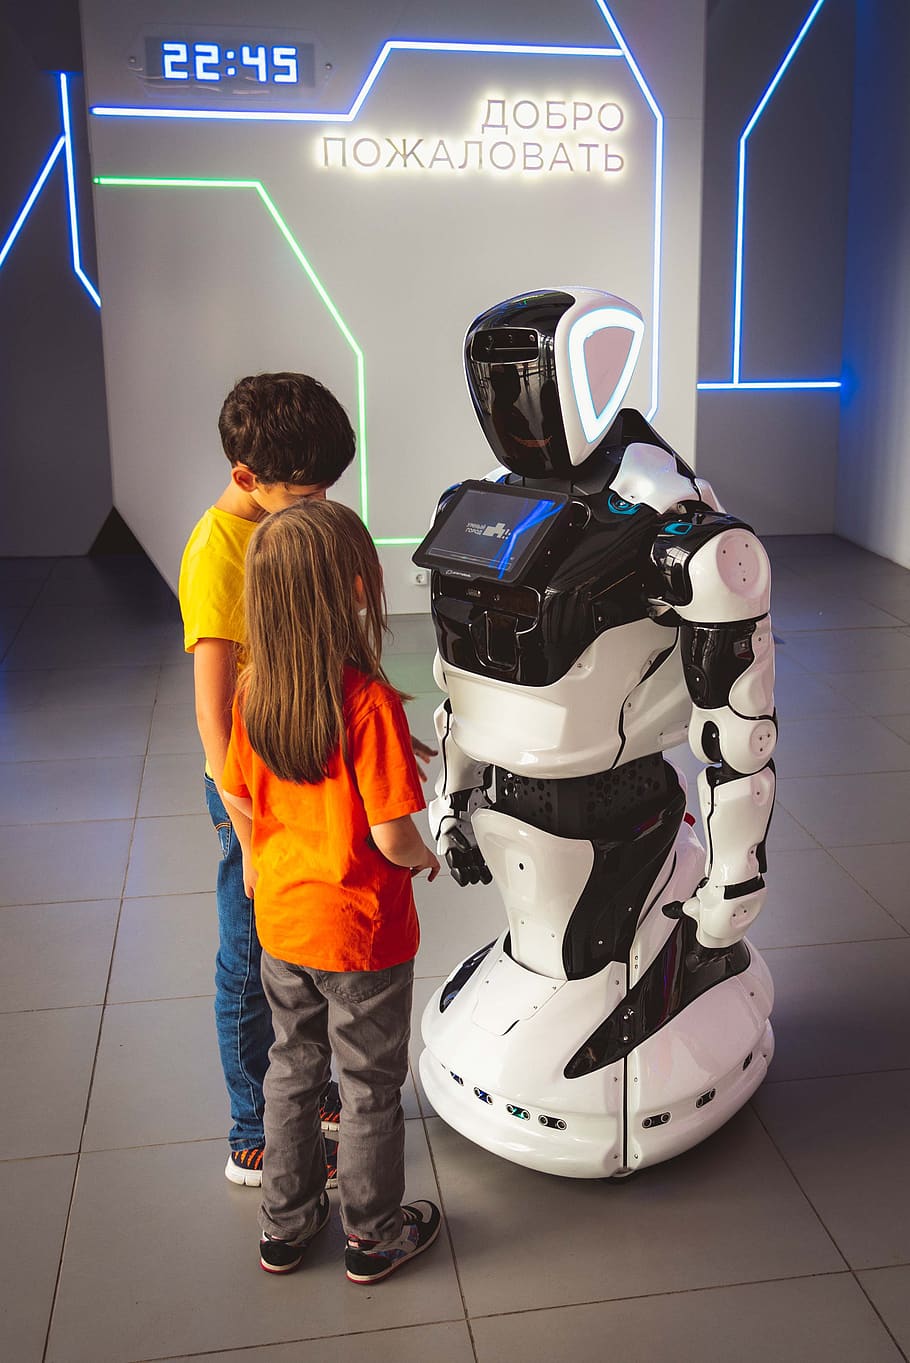 robô, crianças, rússia, interativo, robótico, tecnologia, criança, centro, juventude, menina